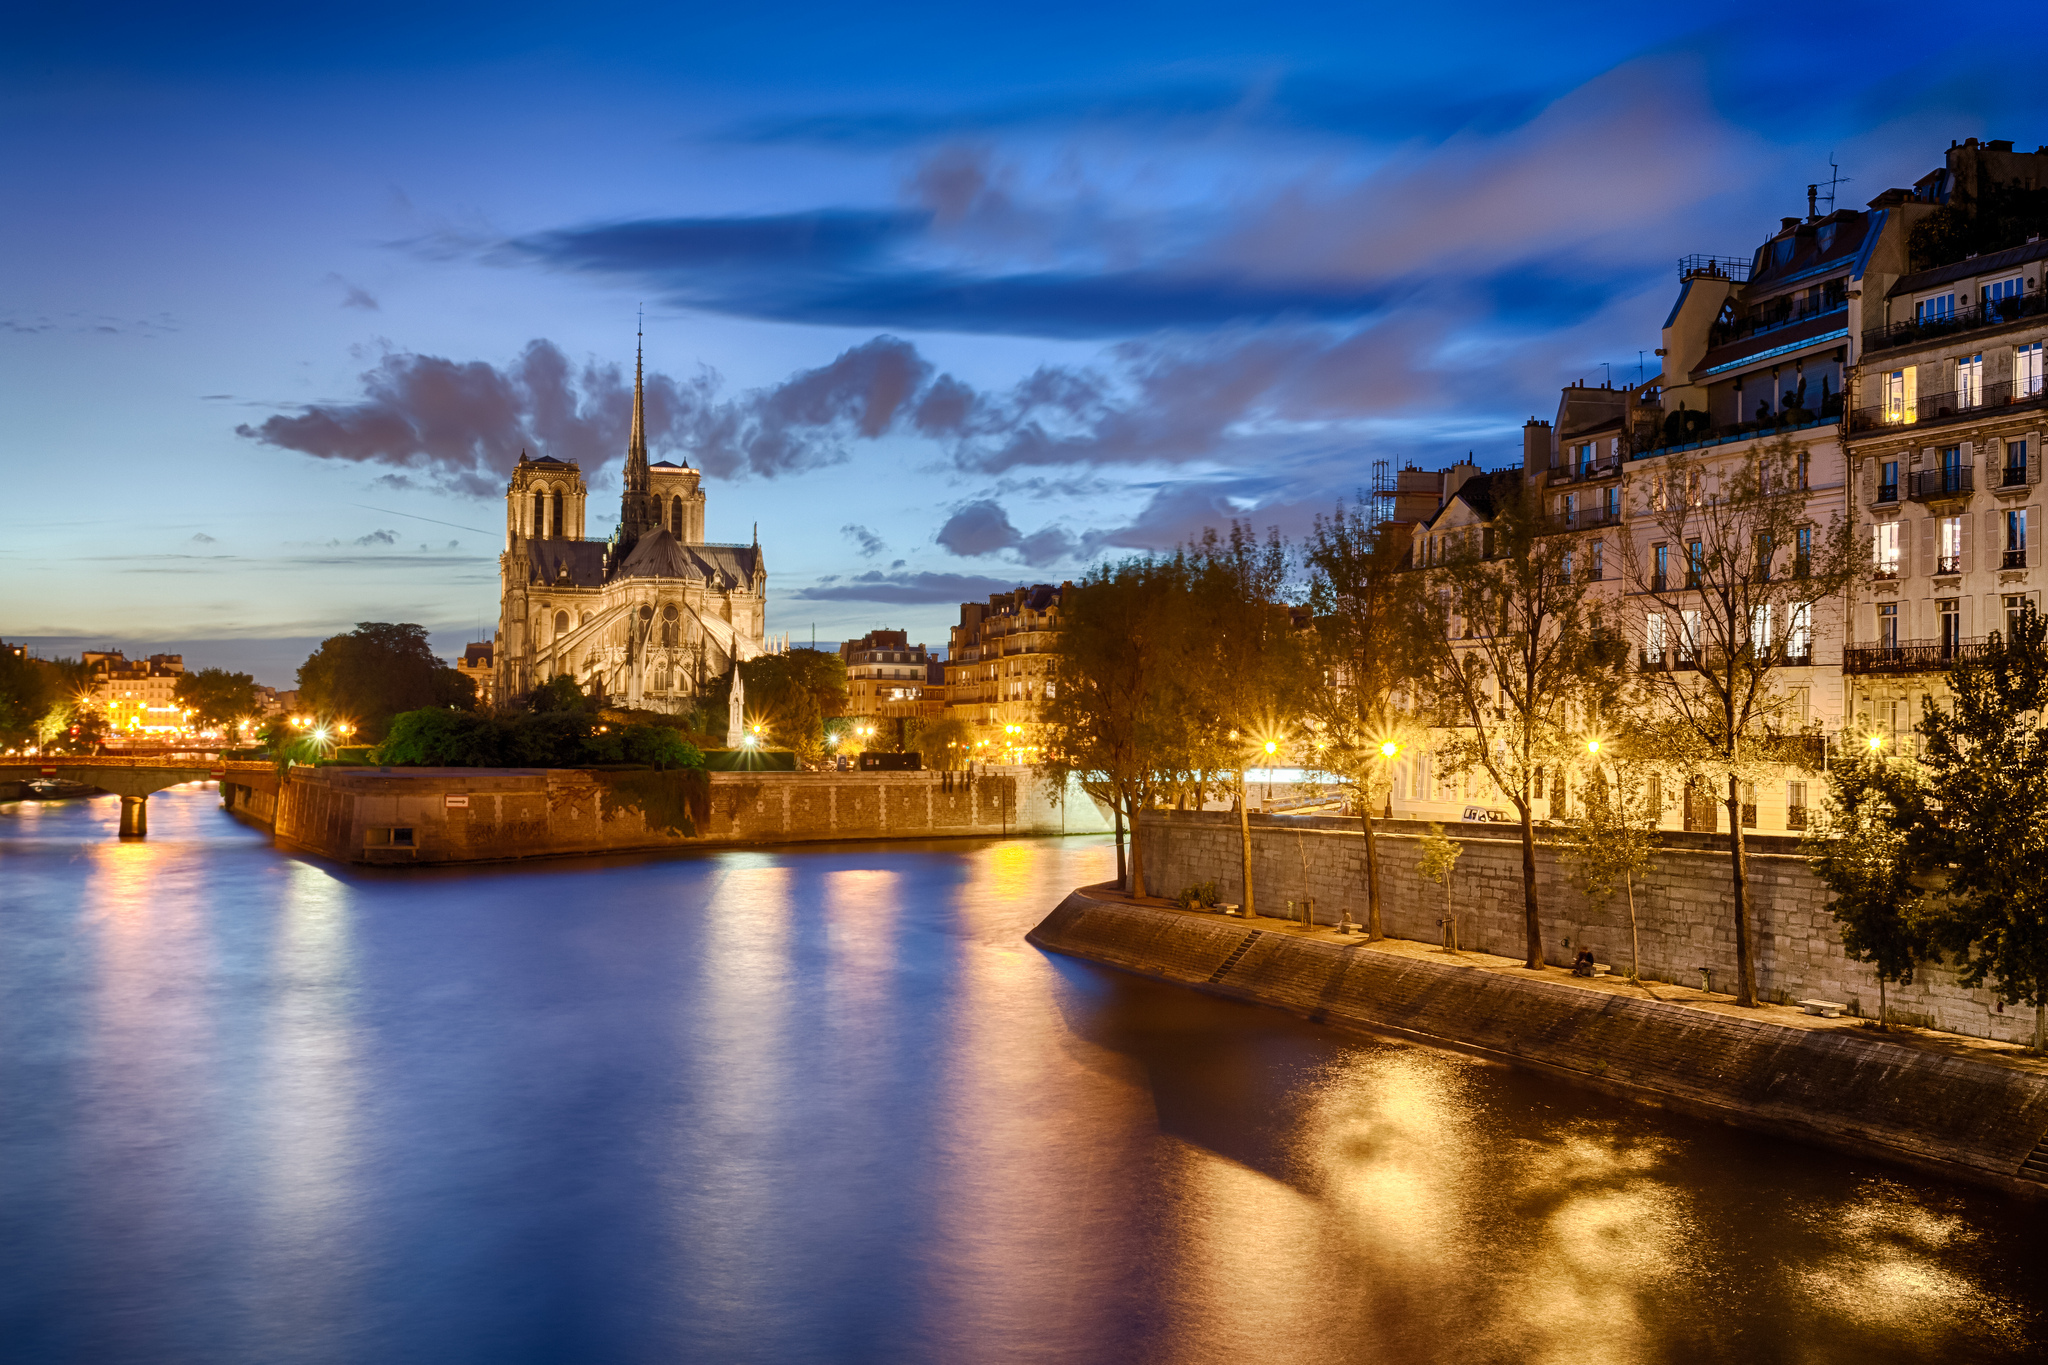 Notre Dame De Paris HD Wallpaper Background Image